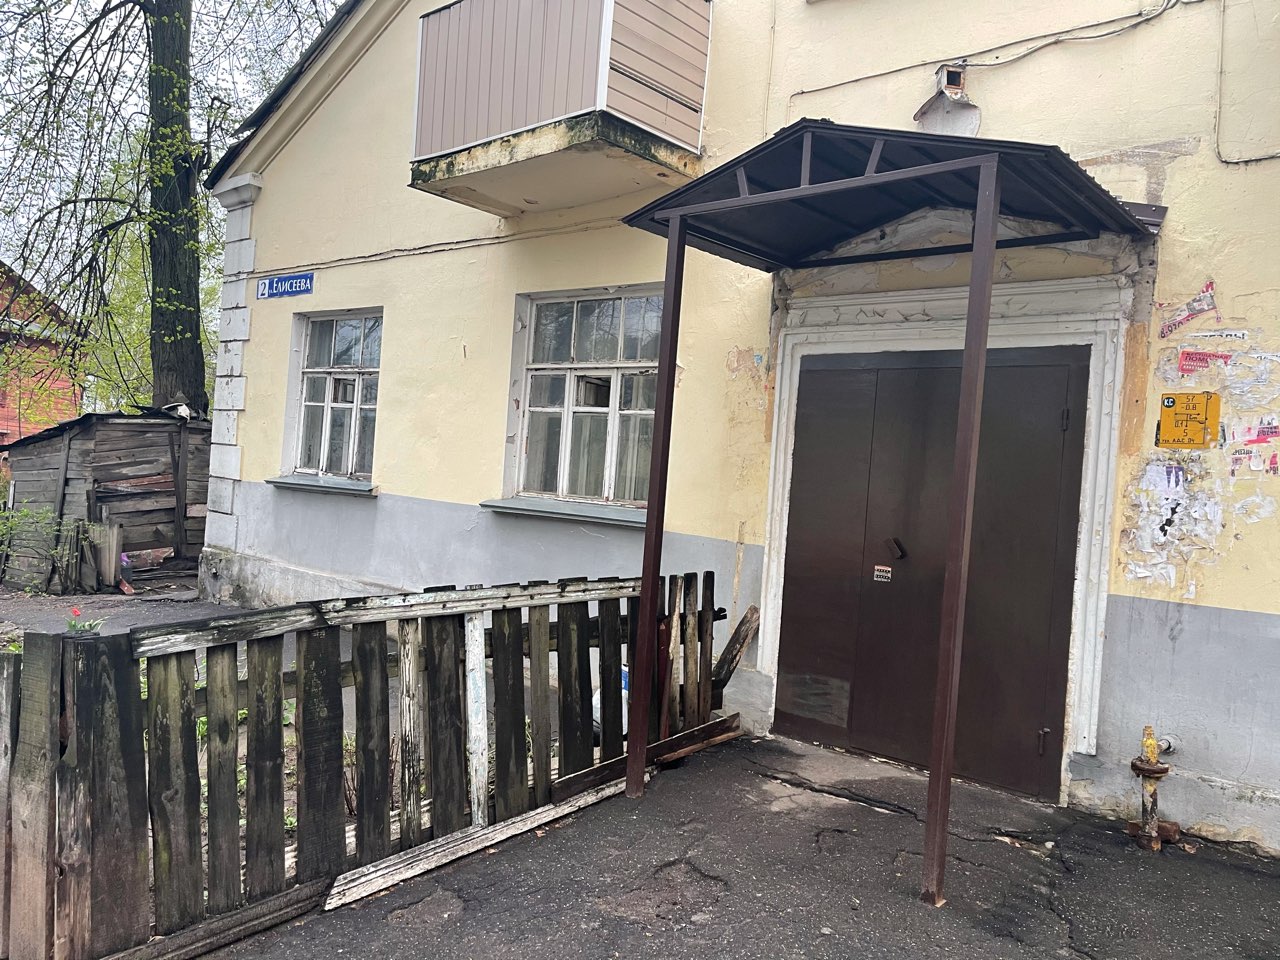 Подъезд многоквартирного дома в Дзержинске отремонтировали после жалоб жильцов в ГЖИ  - фото 1